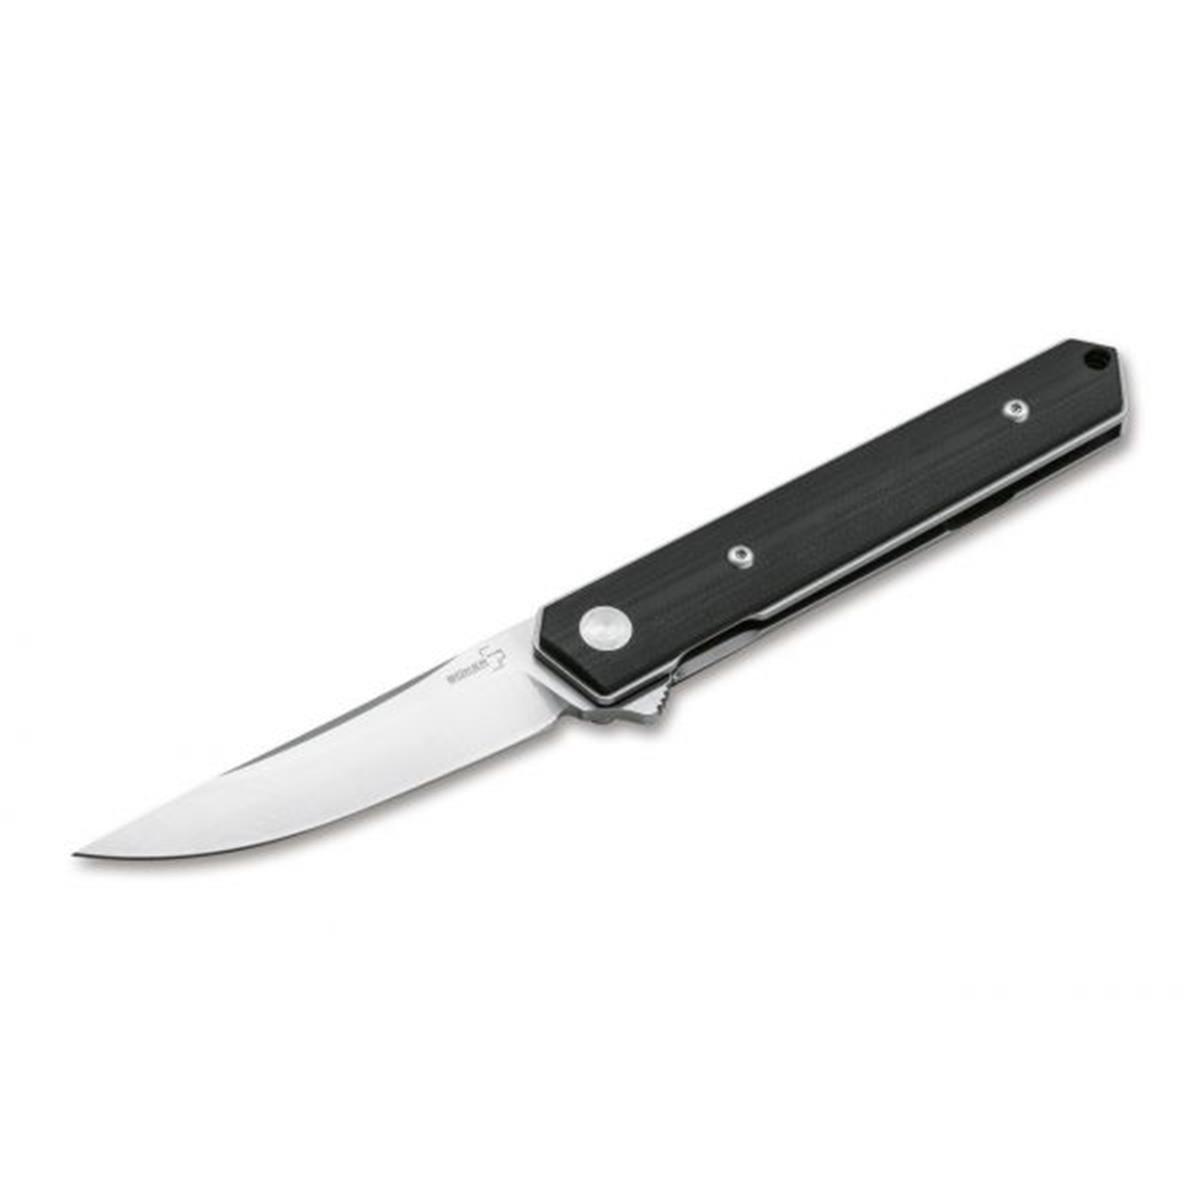 01bo268 Kwaiken Mini Flipper G10 Pocket Knife - Black